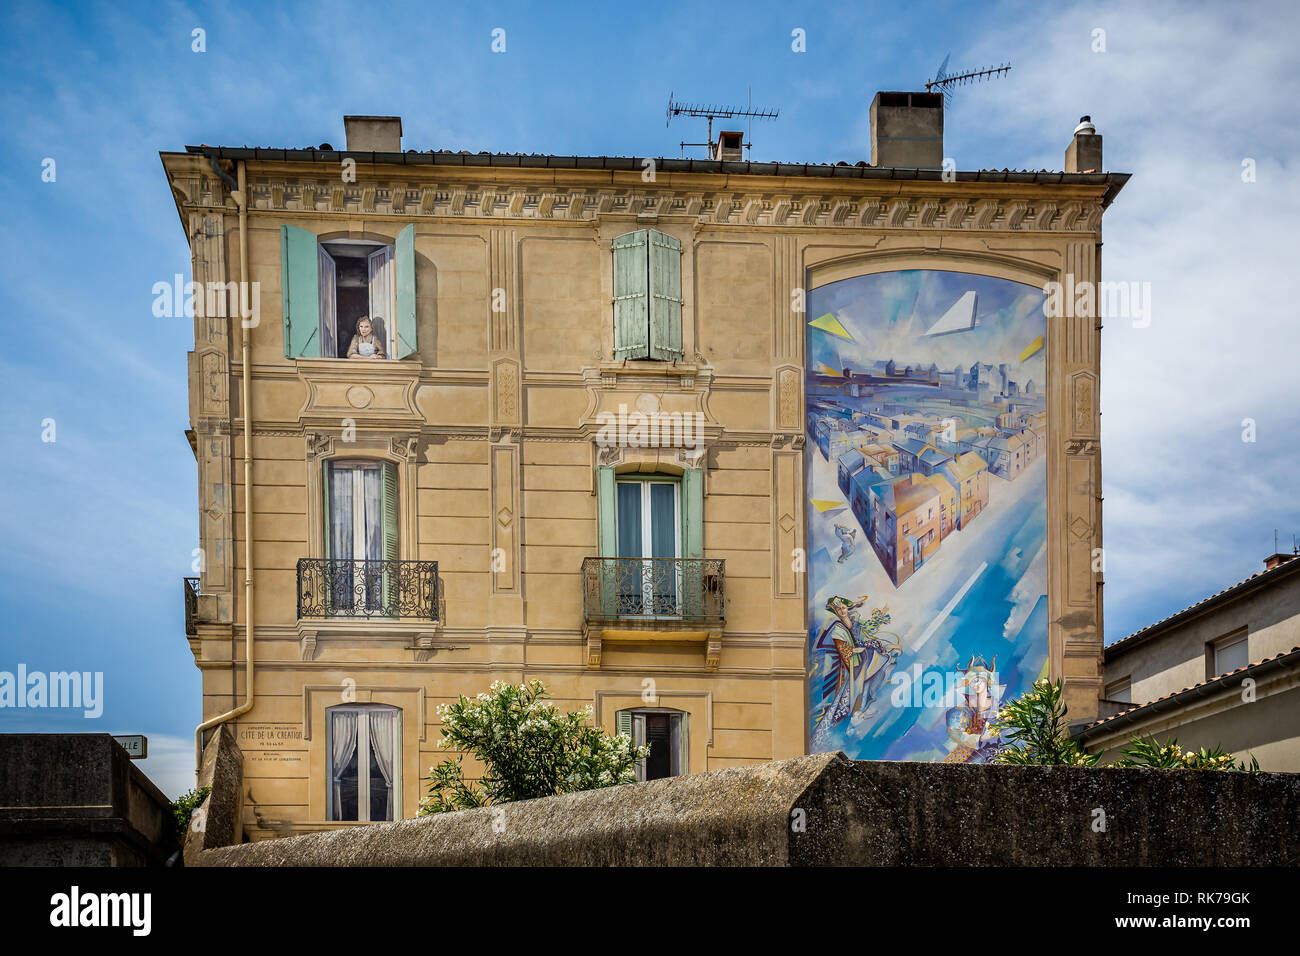 Wandmalereien - Trompe-l'oeil-berufskranheiten der reich verzierte Gebäude in Carcassonne, Aude, Frankreich Am 11. Juni 2015 Stockfoto